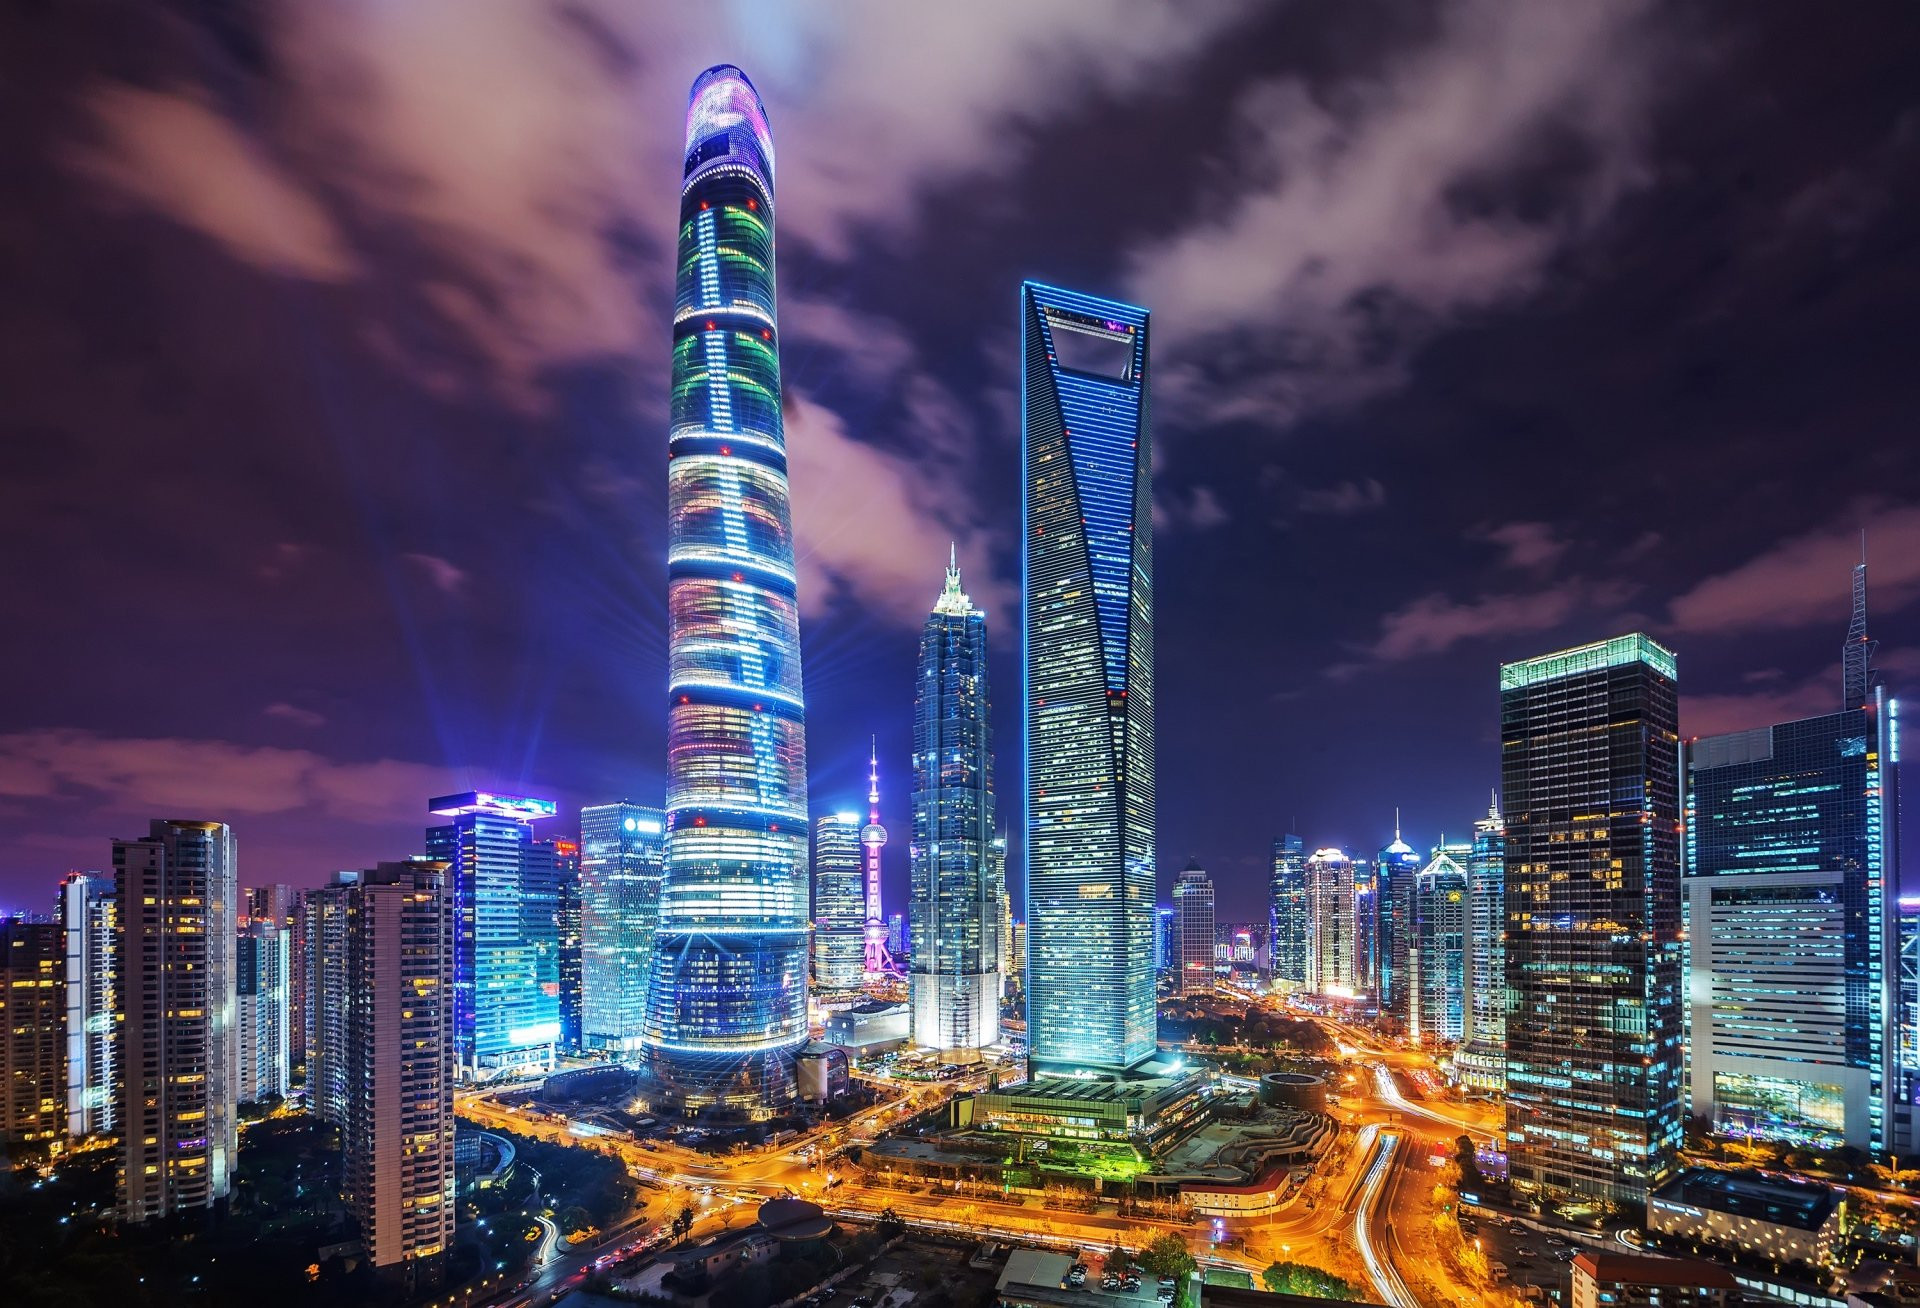 Tòa nhà cao nhất Trung Quốc: Thiết kế phức tạp, hơn 100 thang máy siêu tốc - 8